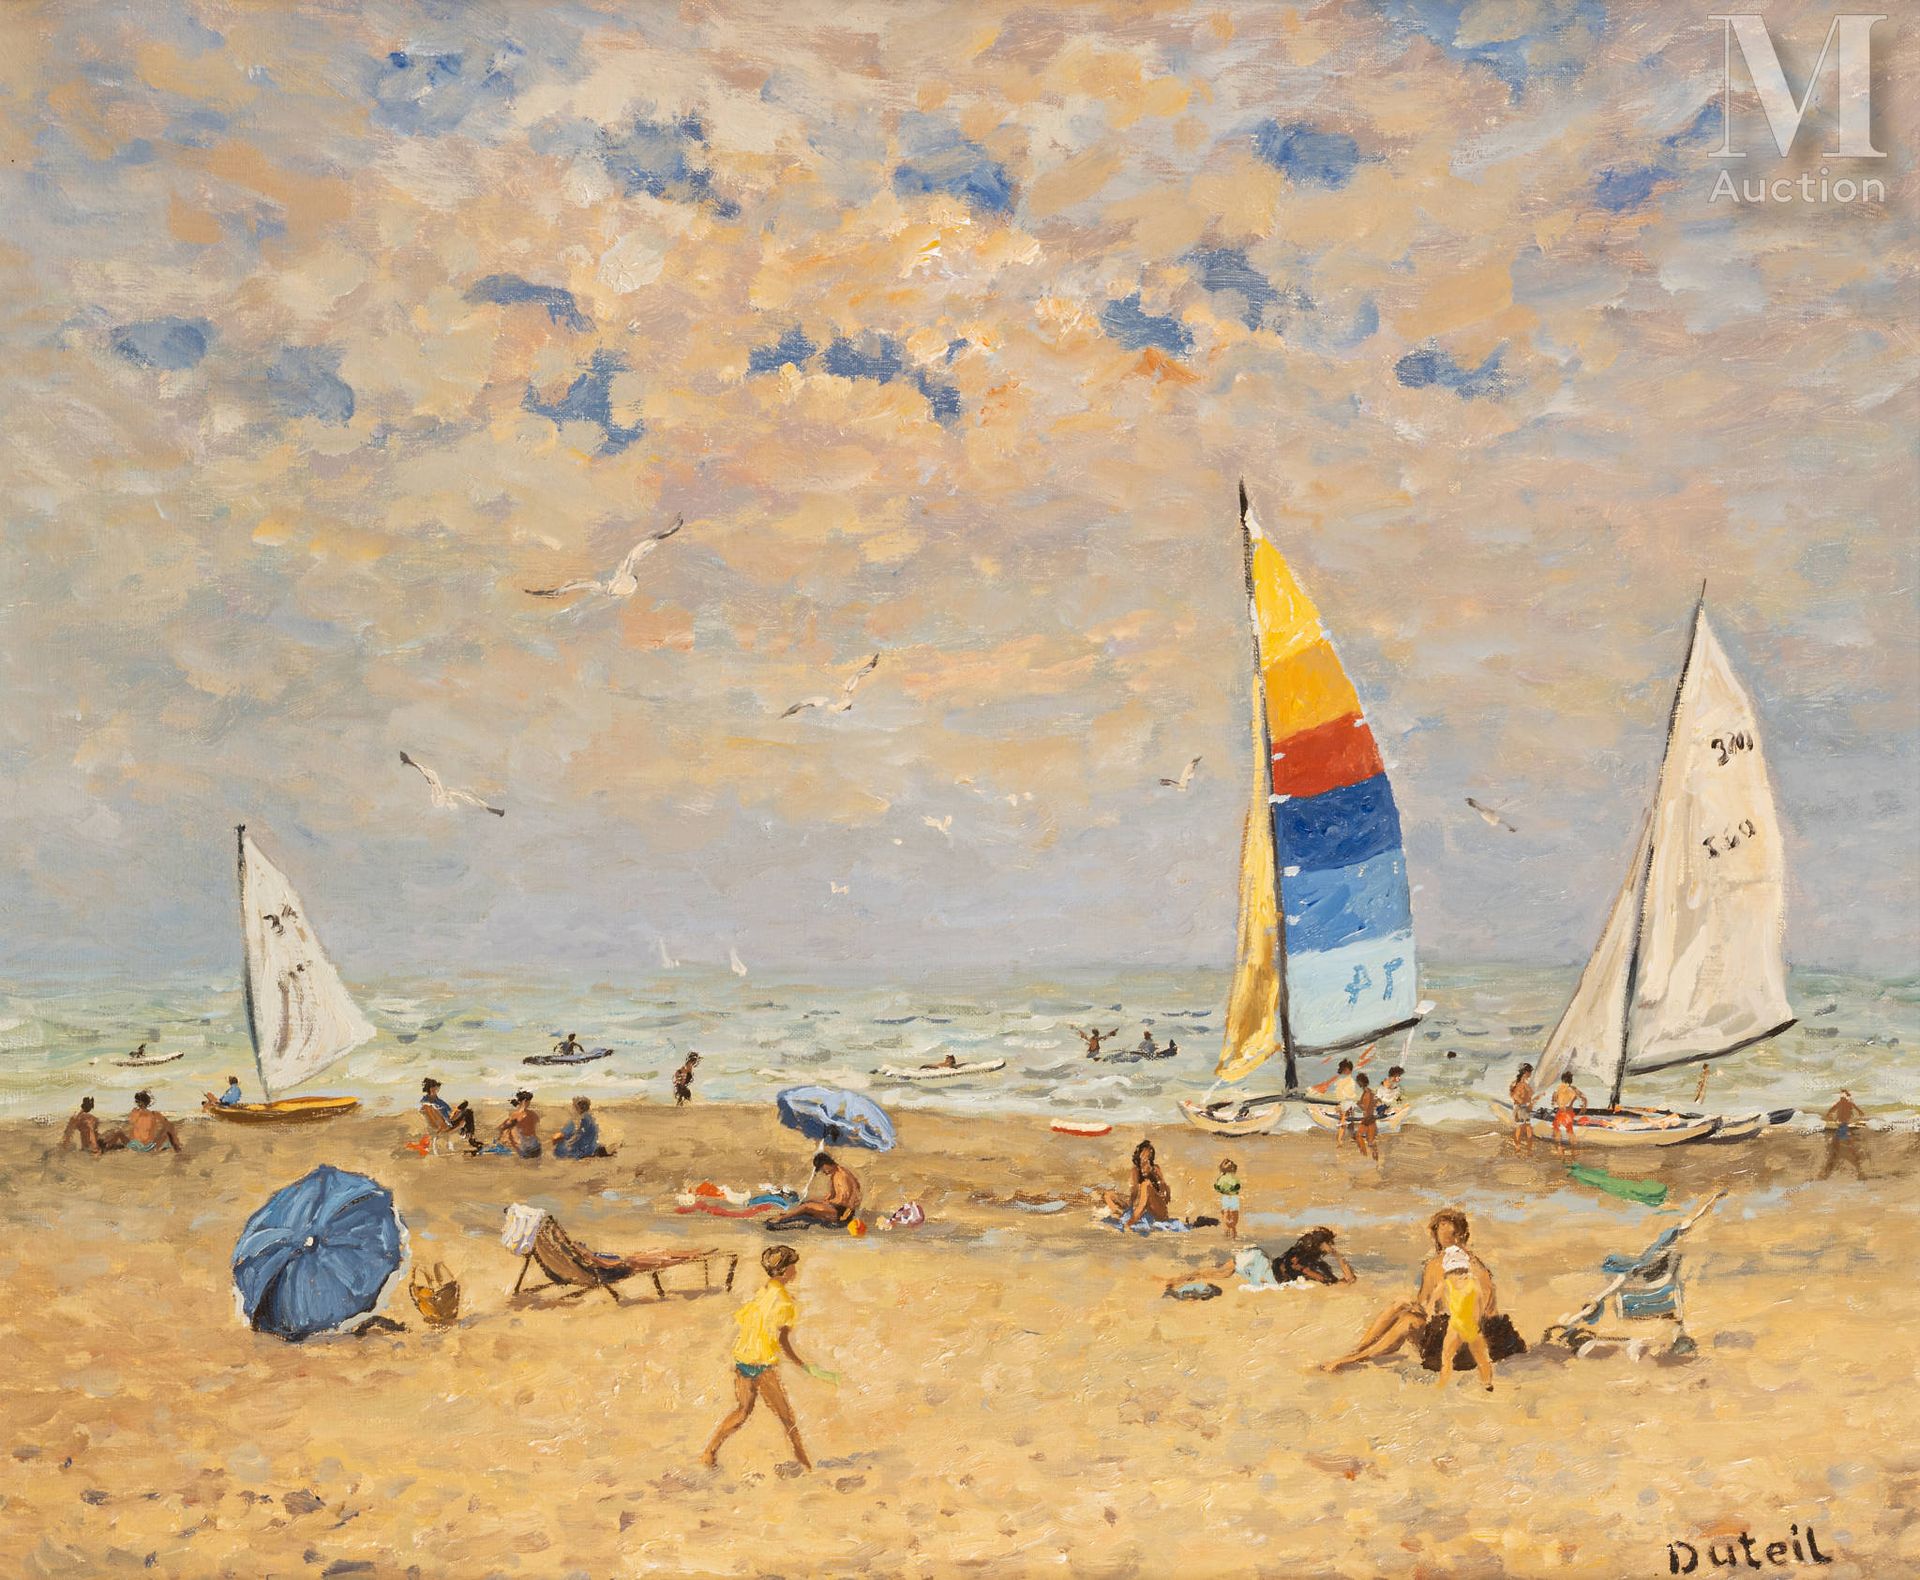 Jean-Claude DUTEIL (Né en 1950) 夏天的海滩

原创布面油画 
45 x 53 cm
签名右下：Duteil
背面手写：La pl&hellip;